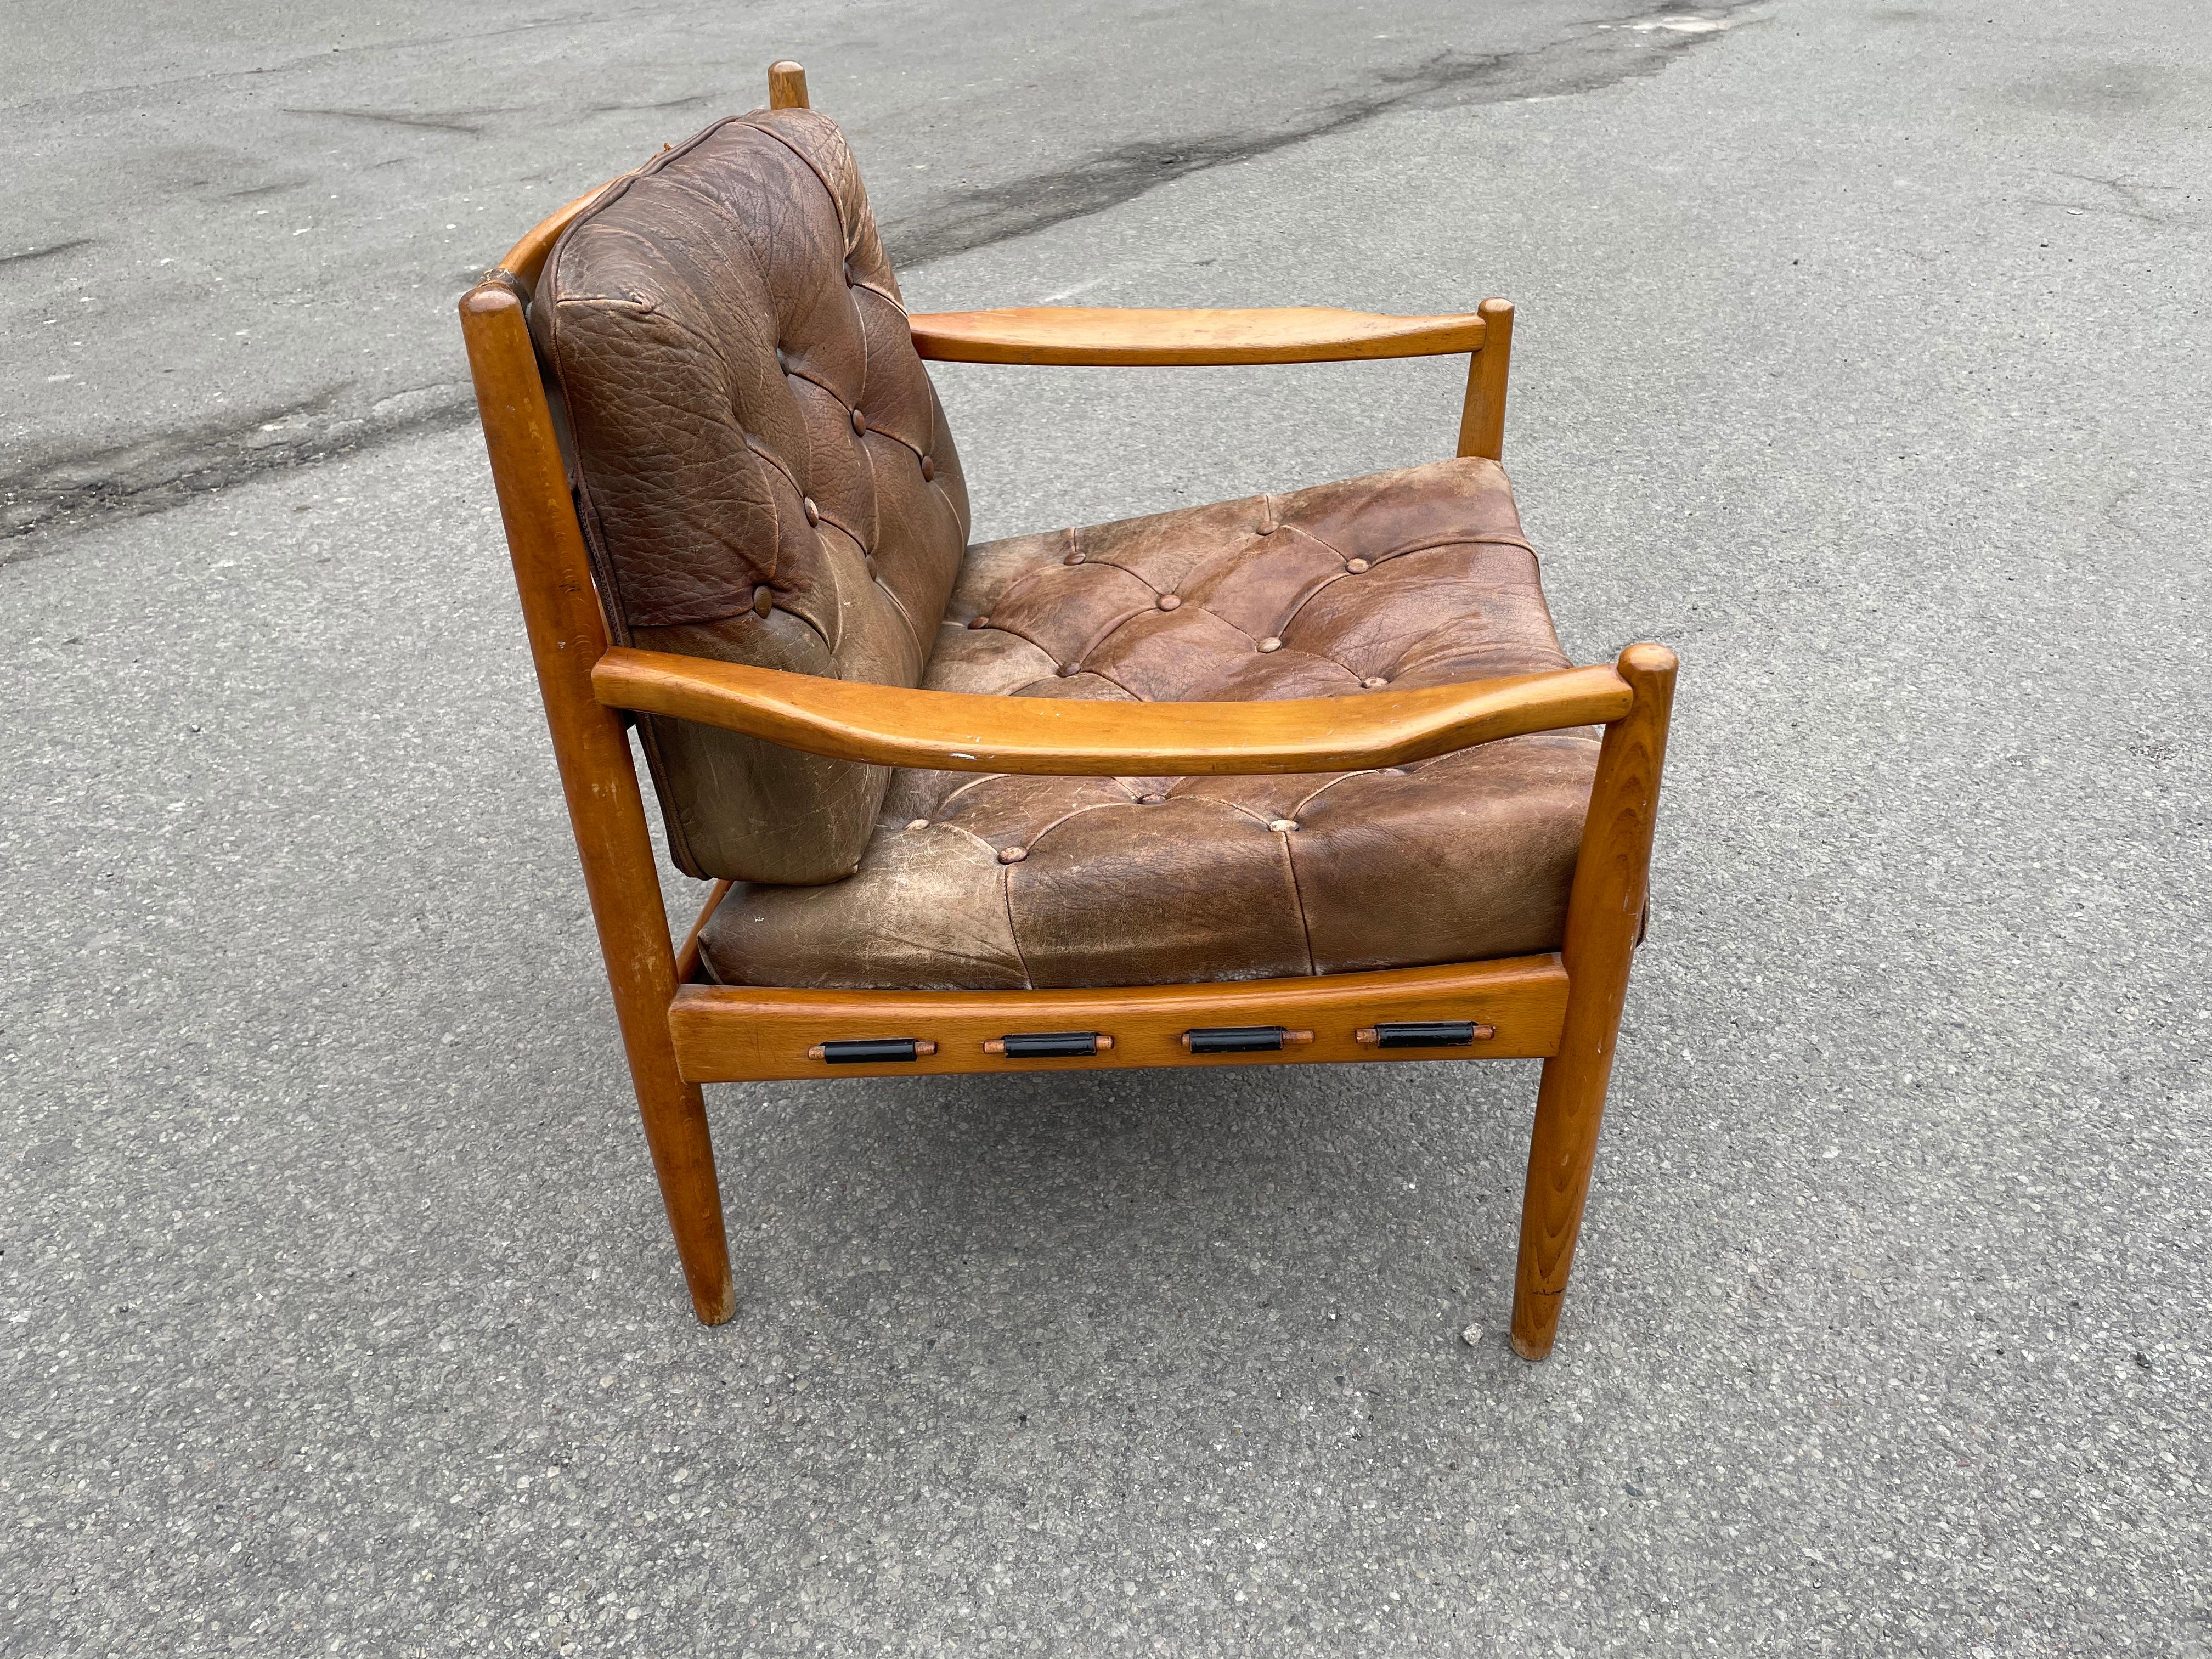 Wunderschöner Loungesessel 'Läckö' von Ingemar Thillmark für OPE Mobler, 1960er Jahre, aus dickem getuftetem Leder auf einem gebeizten Buchenholzrahmen.